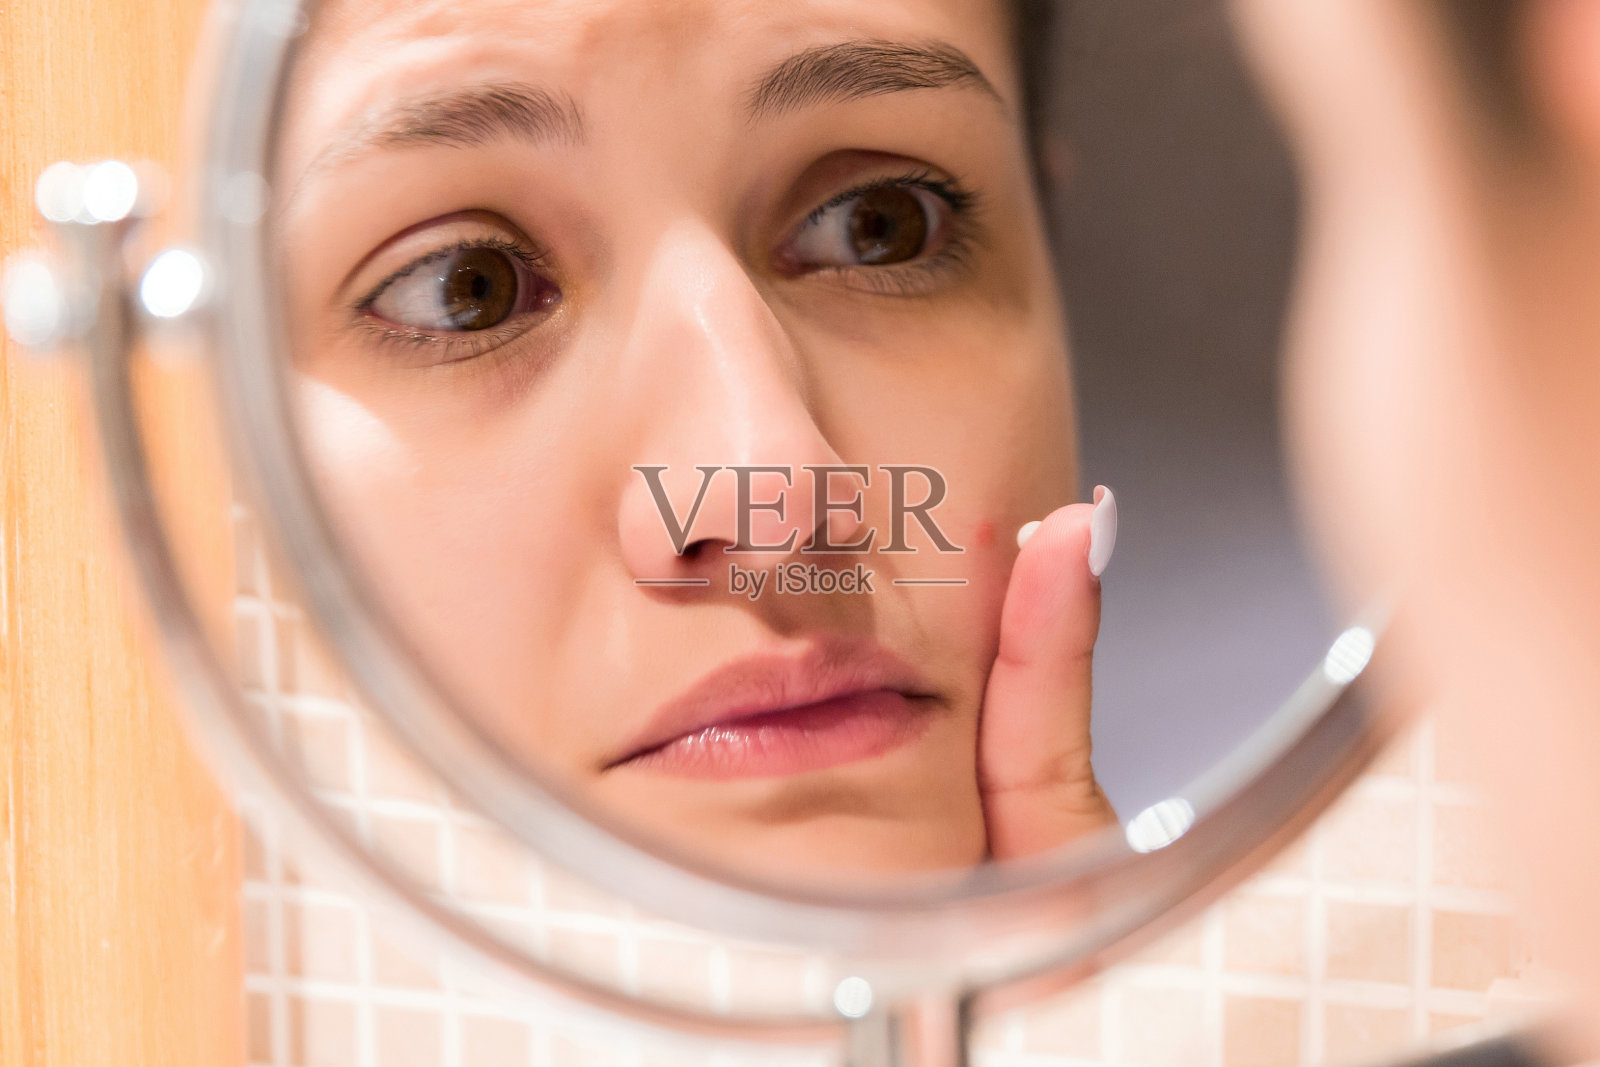 一个小女孩在浴室镜子前给一个红痘痘涂霜。美容、护肤和健康的早晨概念照片摄影图片